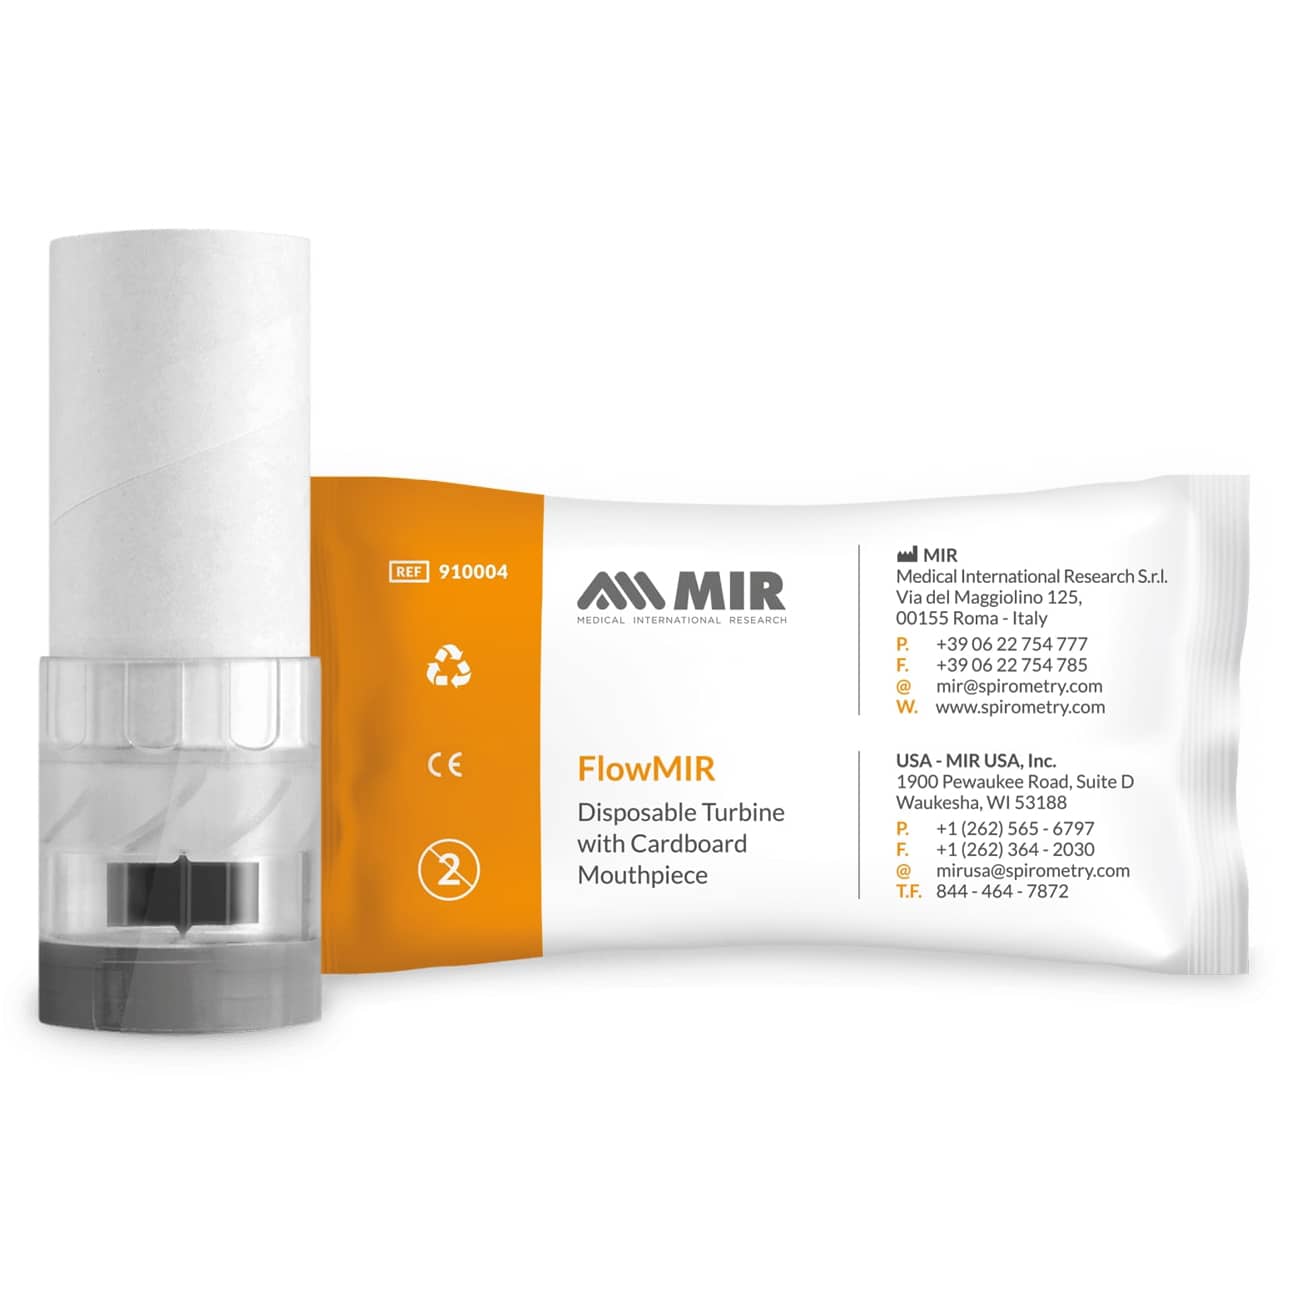 MIR FlowMIR Disposable Turbine packaging